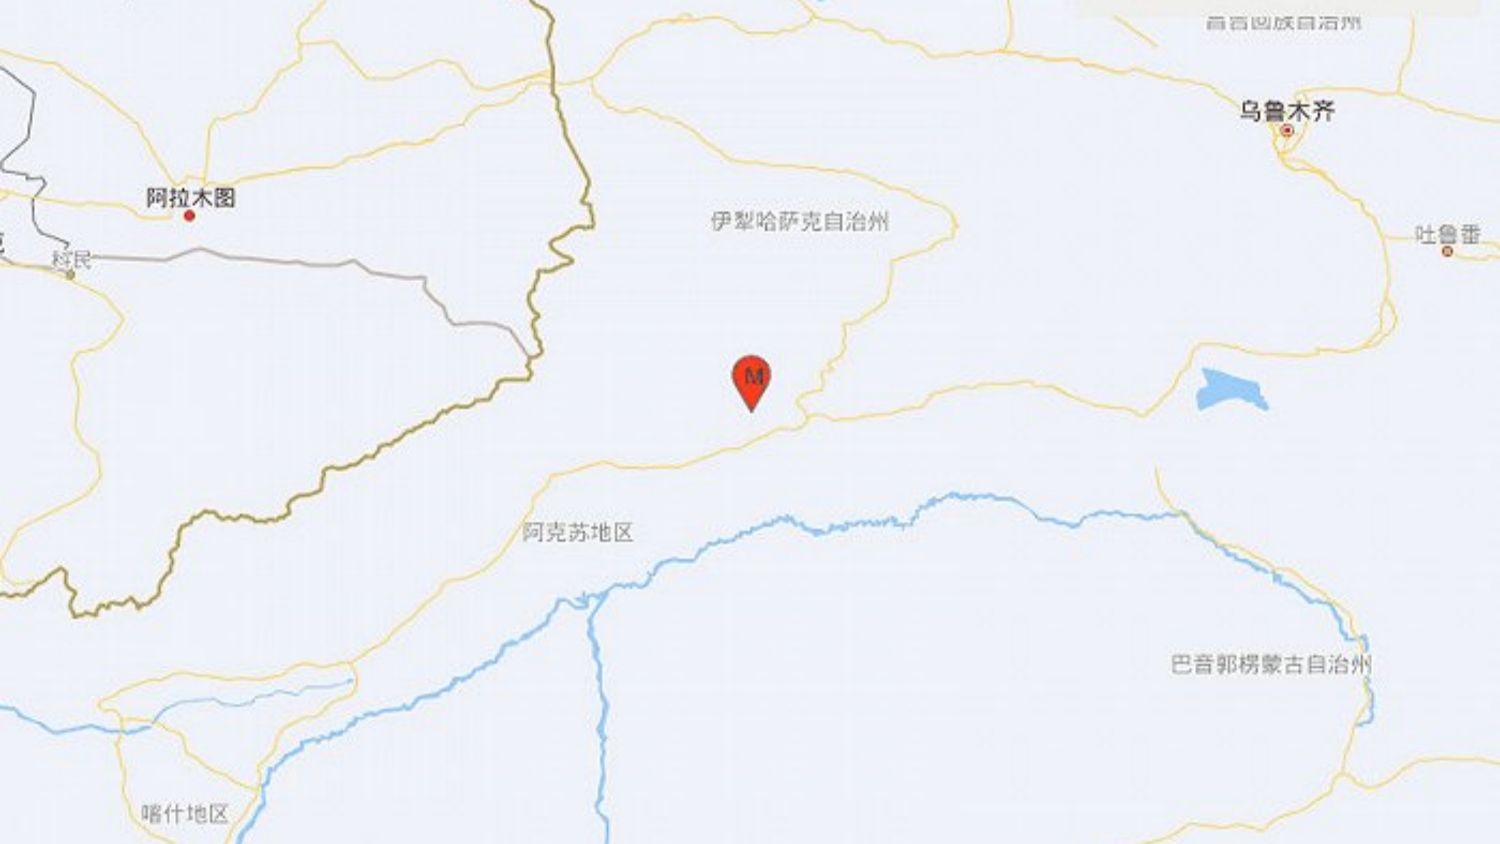 追蹤報道 | 新疆阿克蘇地區拜城縣發生4.8級地震